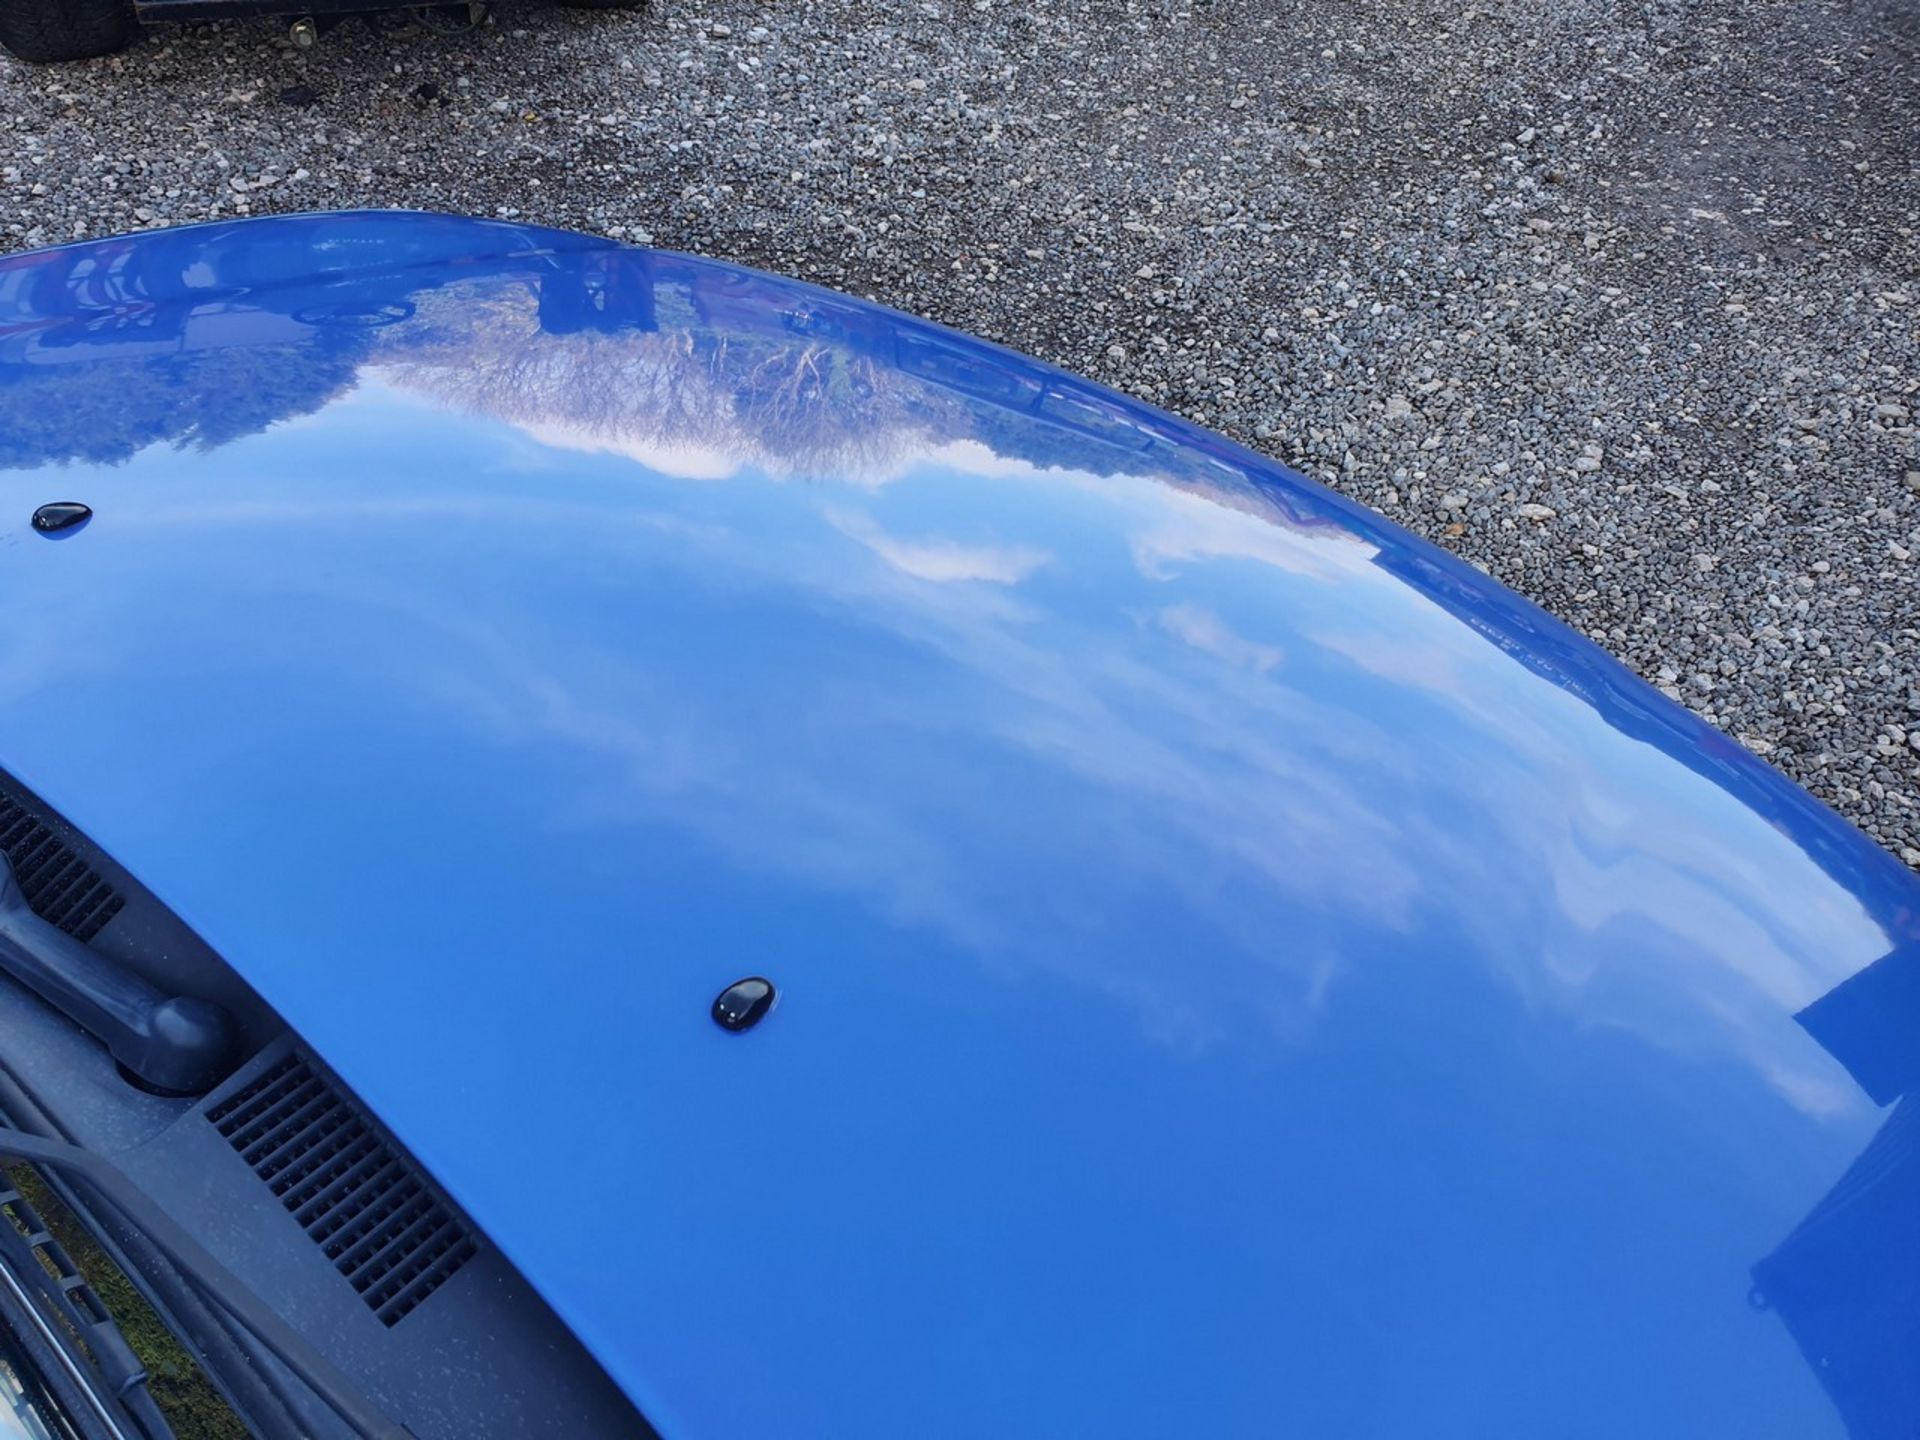 01/51 NISSAN MICRA SE 16V AUTO - 1348cc 5dr Hatchback (Blue, 44k) - Image 21 of 39